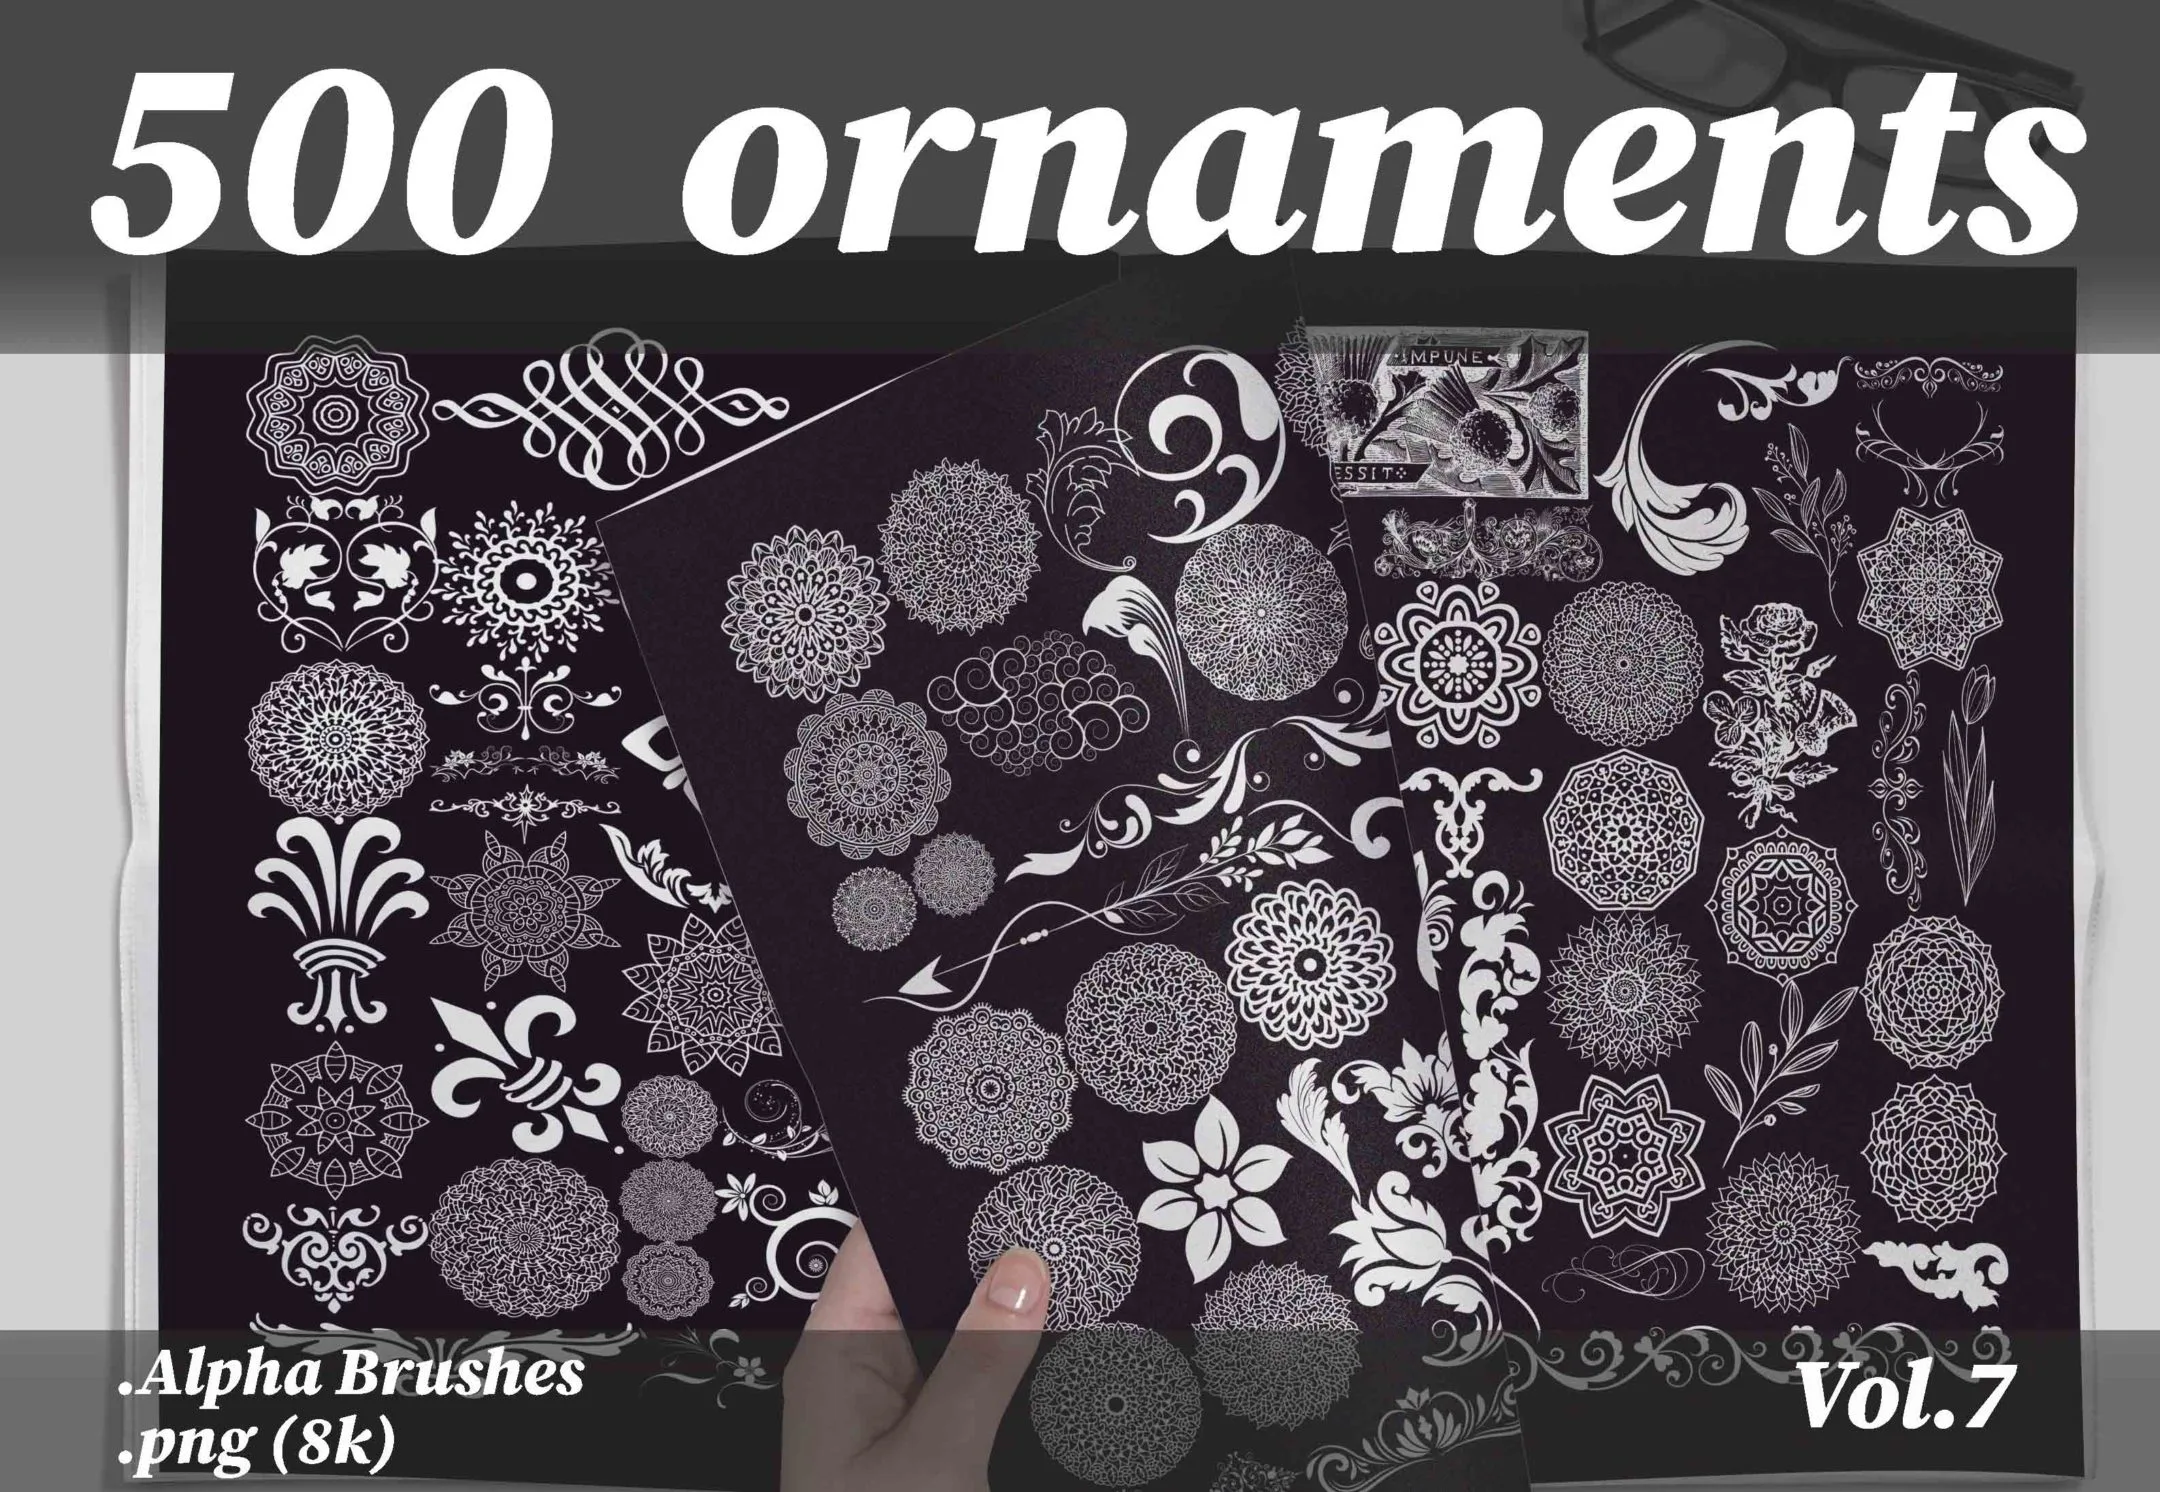 500 ornaments png (8k) vol.7